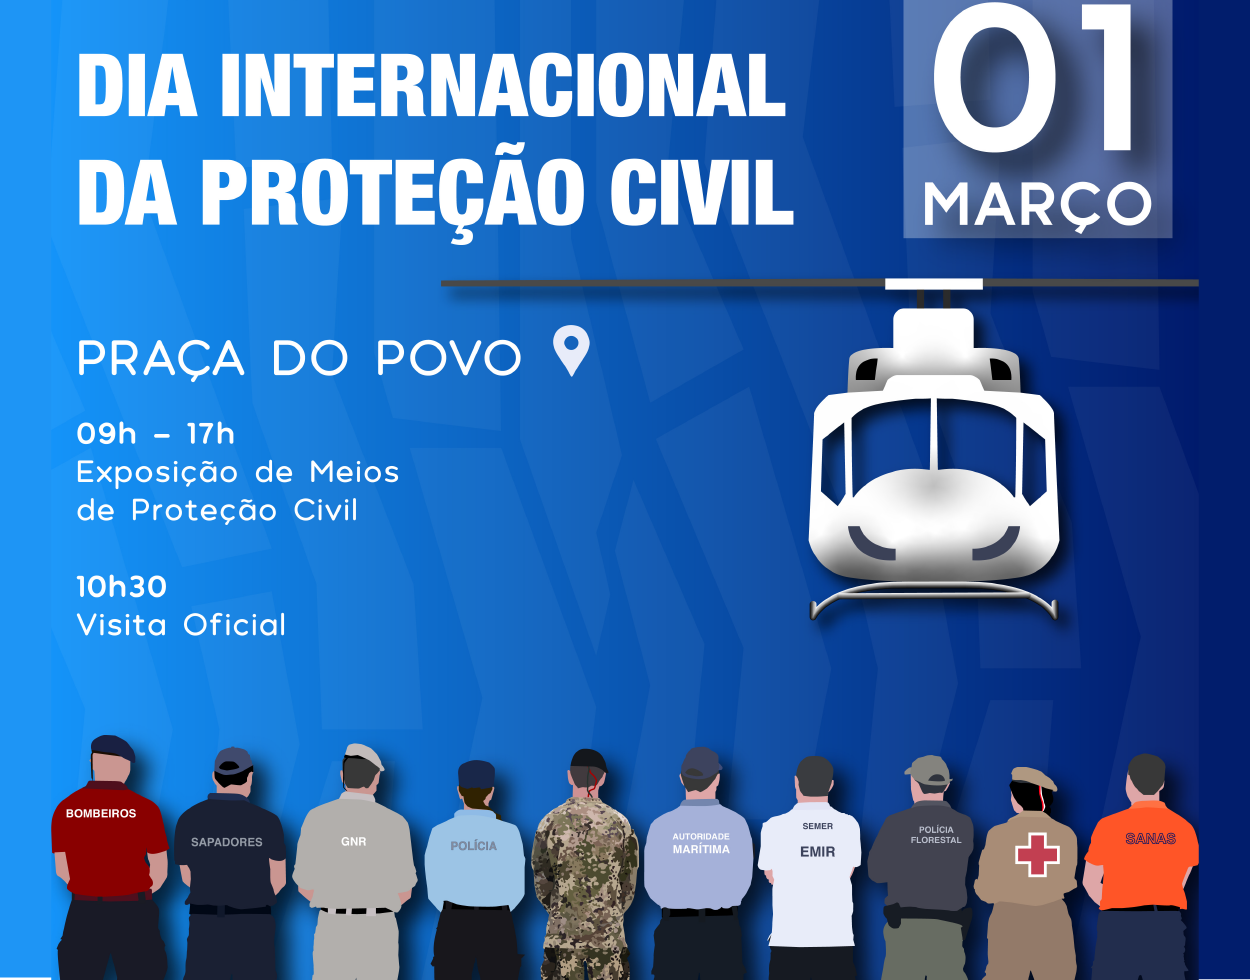 Proteção Civil organiza exposição de meios no âmbito das Comemorações alusivas ao Dia Internacional da Proteção Civil